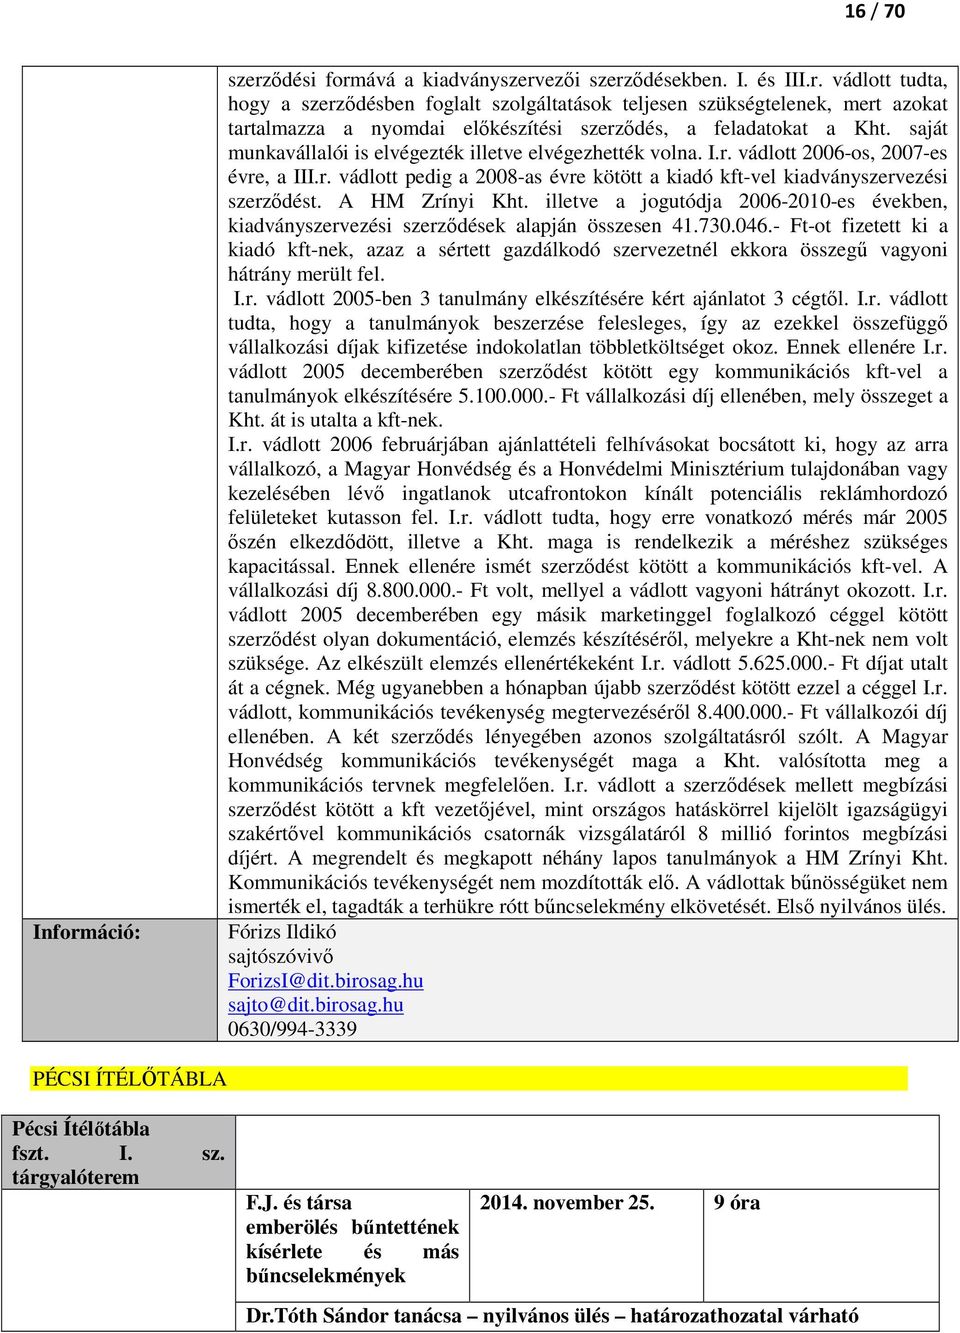 A HM Zrínyi Kht. illetve a jogutódja 2006-2010-es években, kiadványszervezési szerződések alapján összesen 41.730.046.